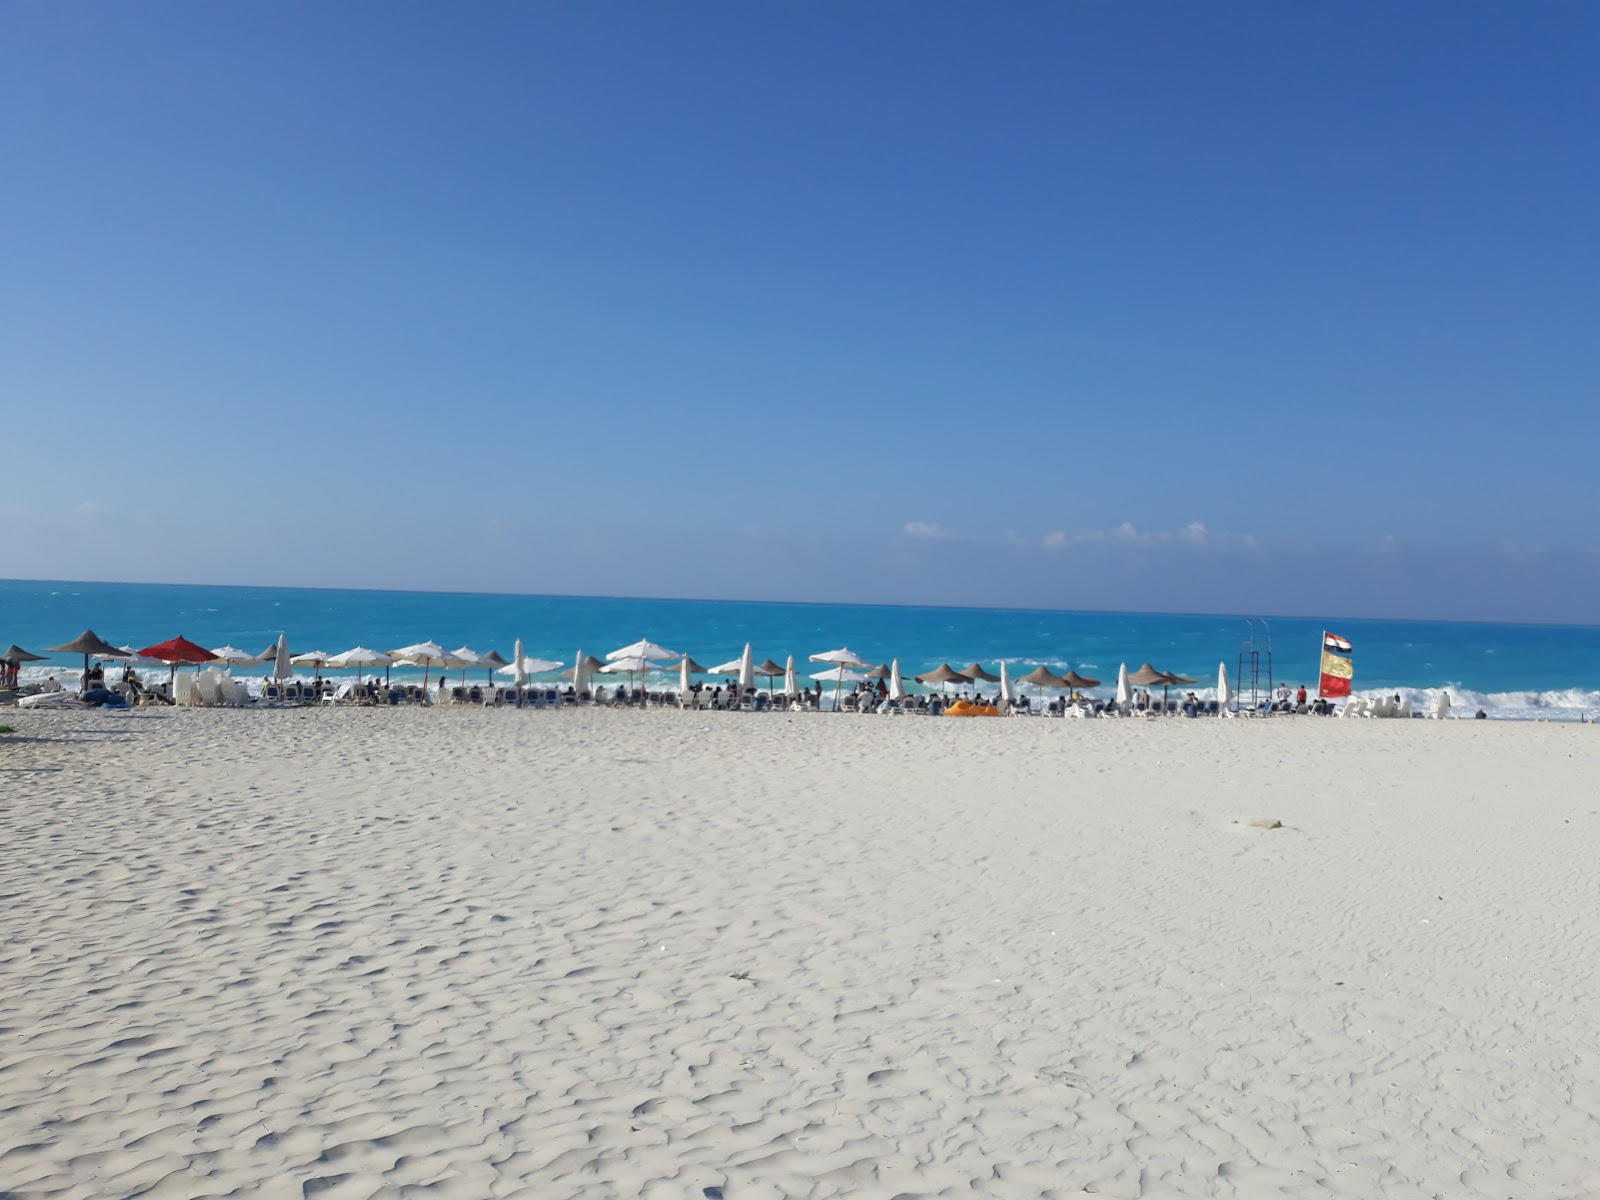 Assiut University Beach'in fotoğrafı - rahatlamayı sevenler arasında popüler bir yer